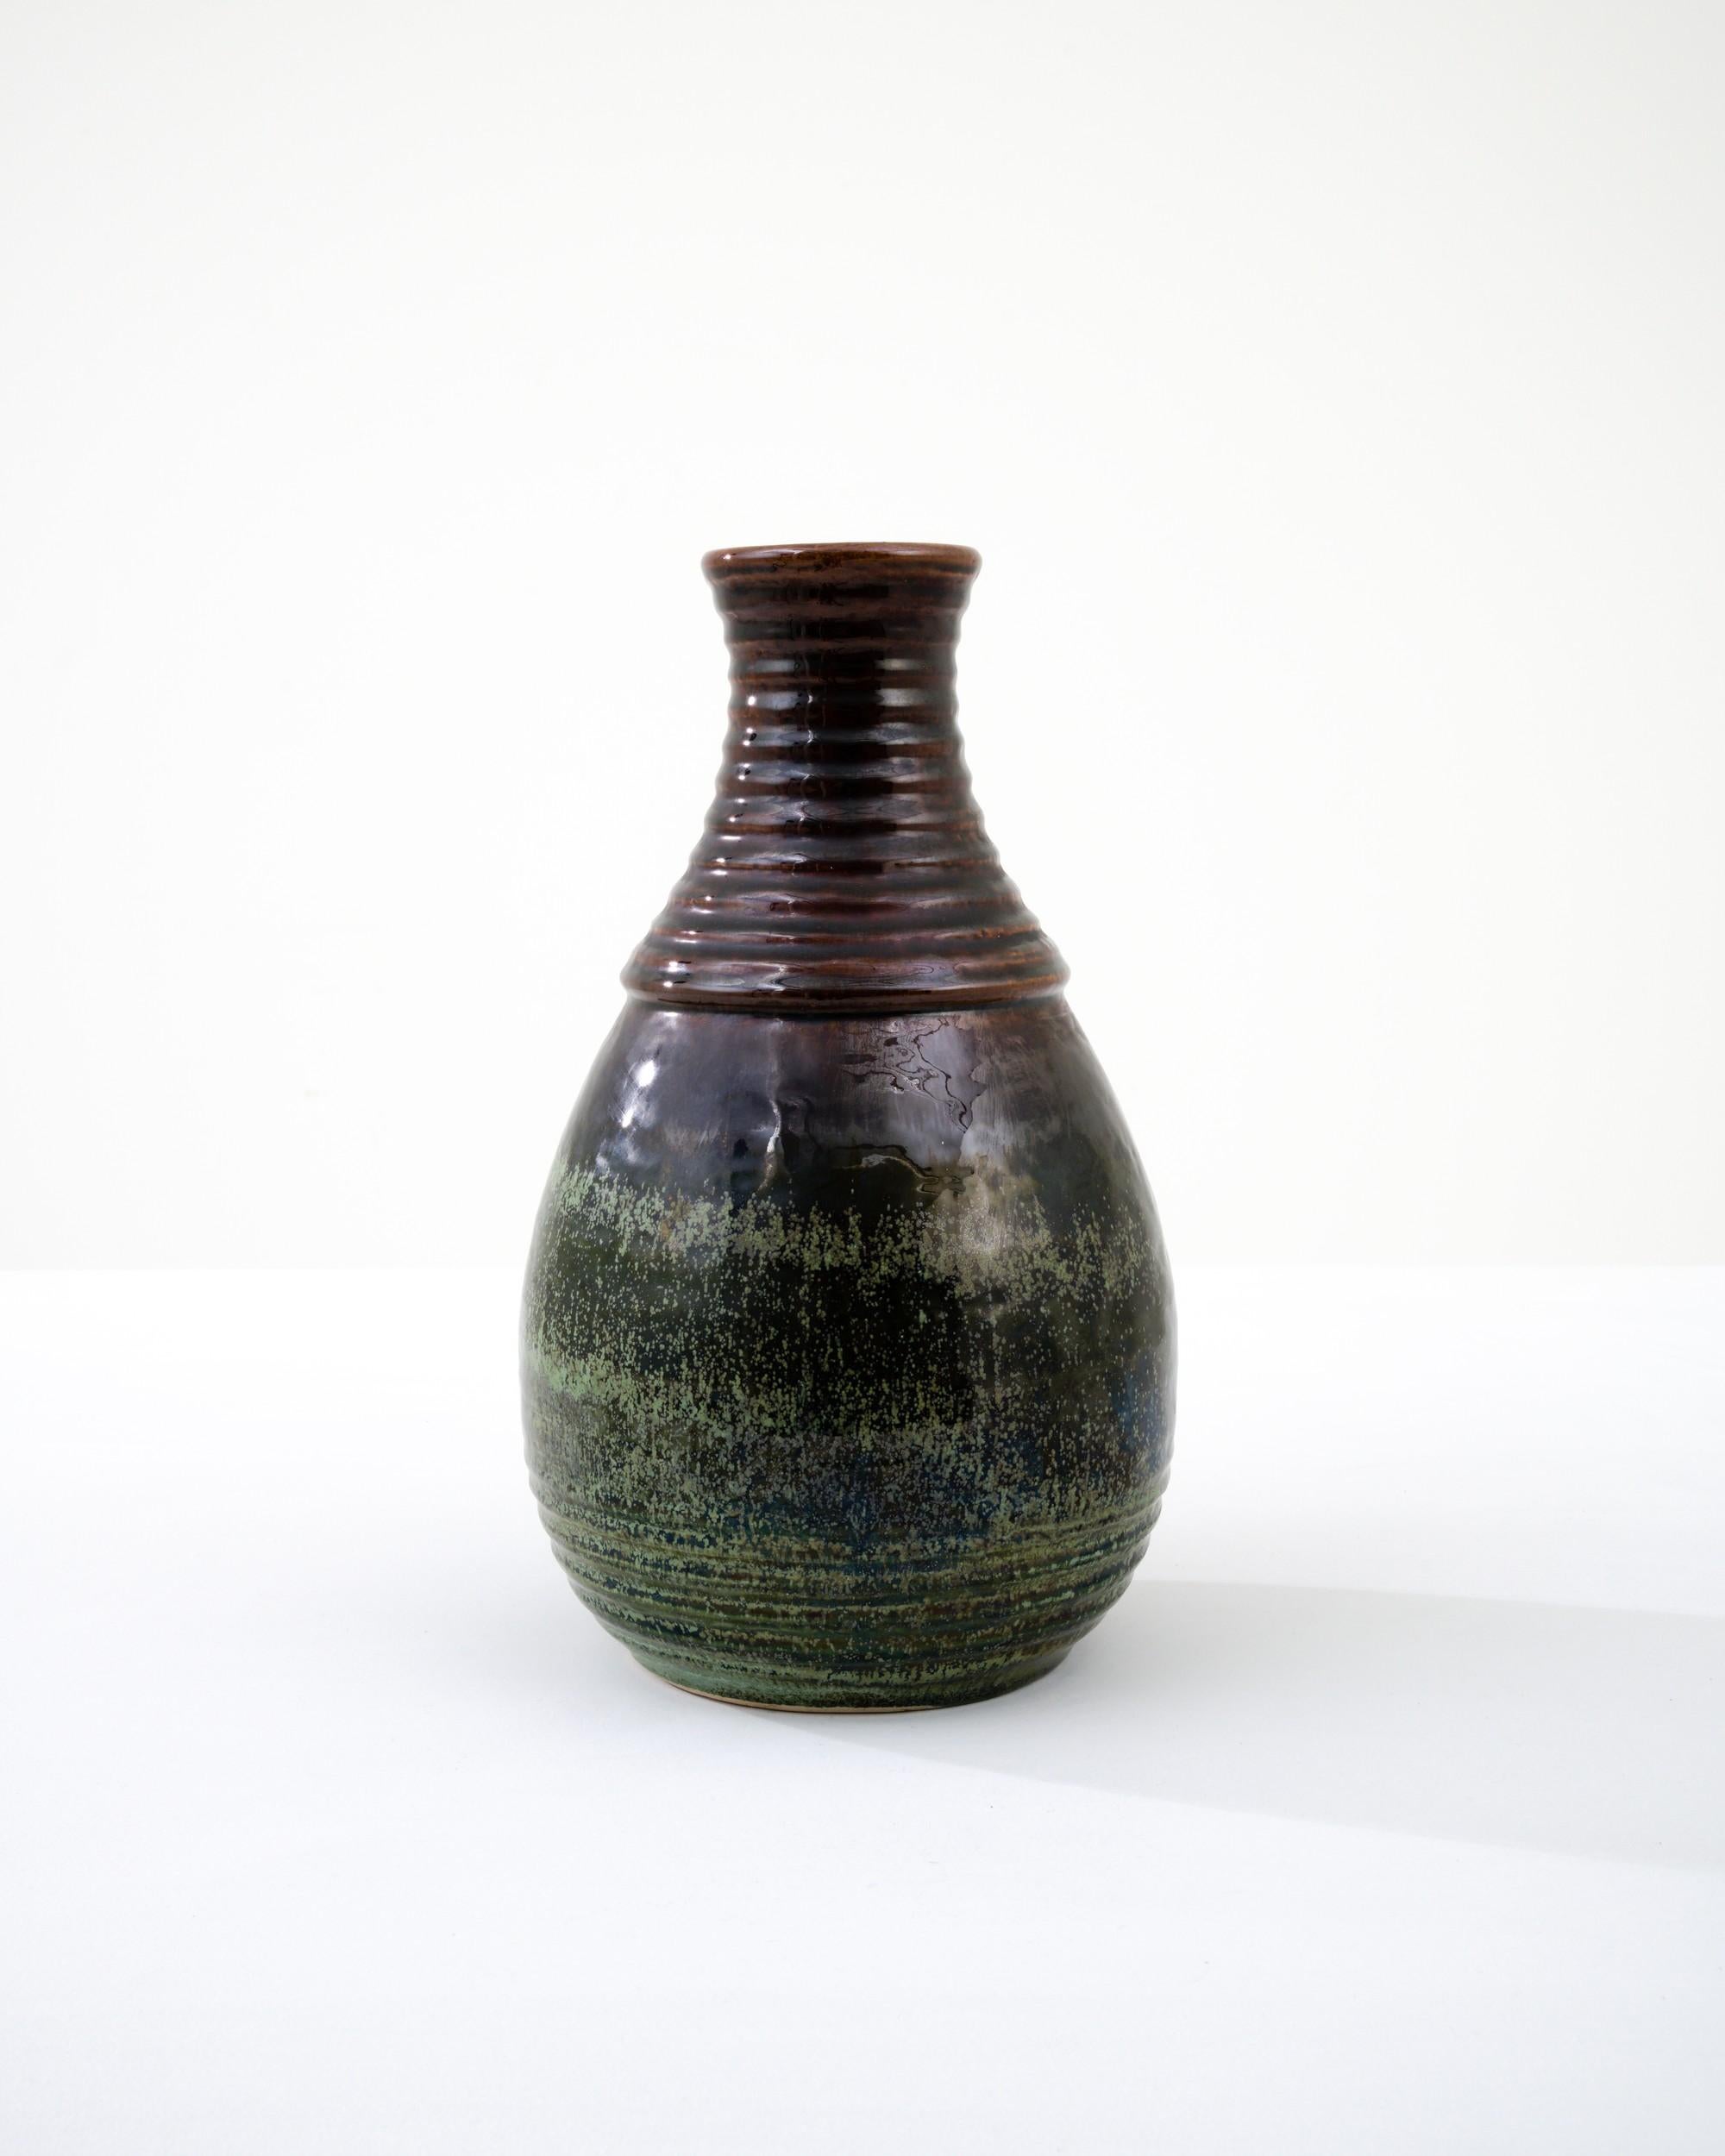 Eine Keramikvase aus der Mitte des 20. Jahrhunderts in Deutschland. Weder groß noch klein, spiegelt diese im Studio gefertigte Kanne das Handgehaltene und das Handgemachte wider; die Taktilität des Prozesses und die Vision des Künstlers - realisiert